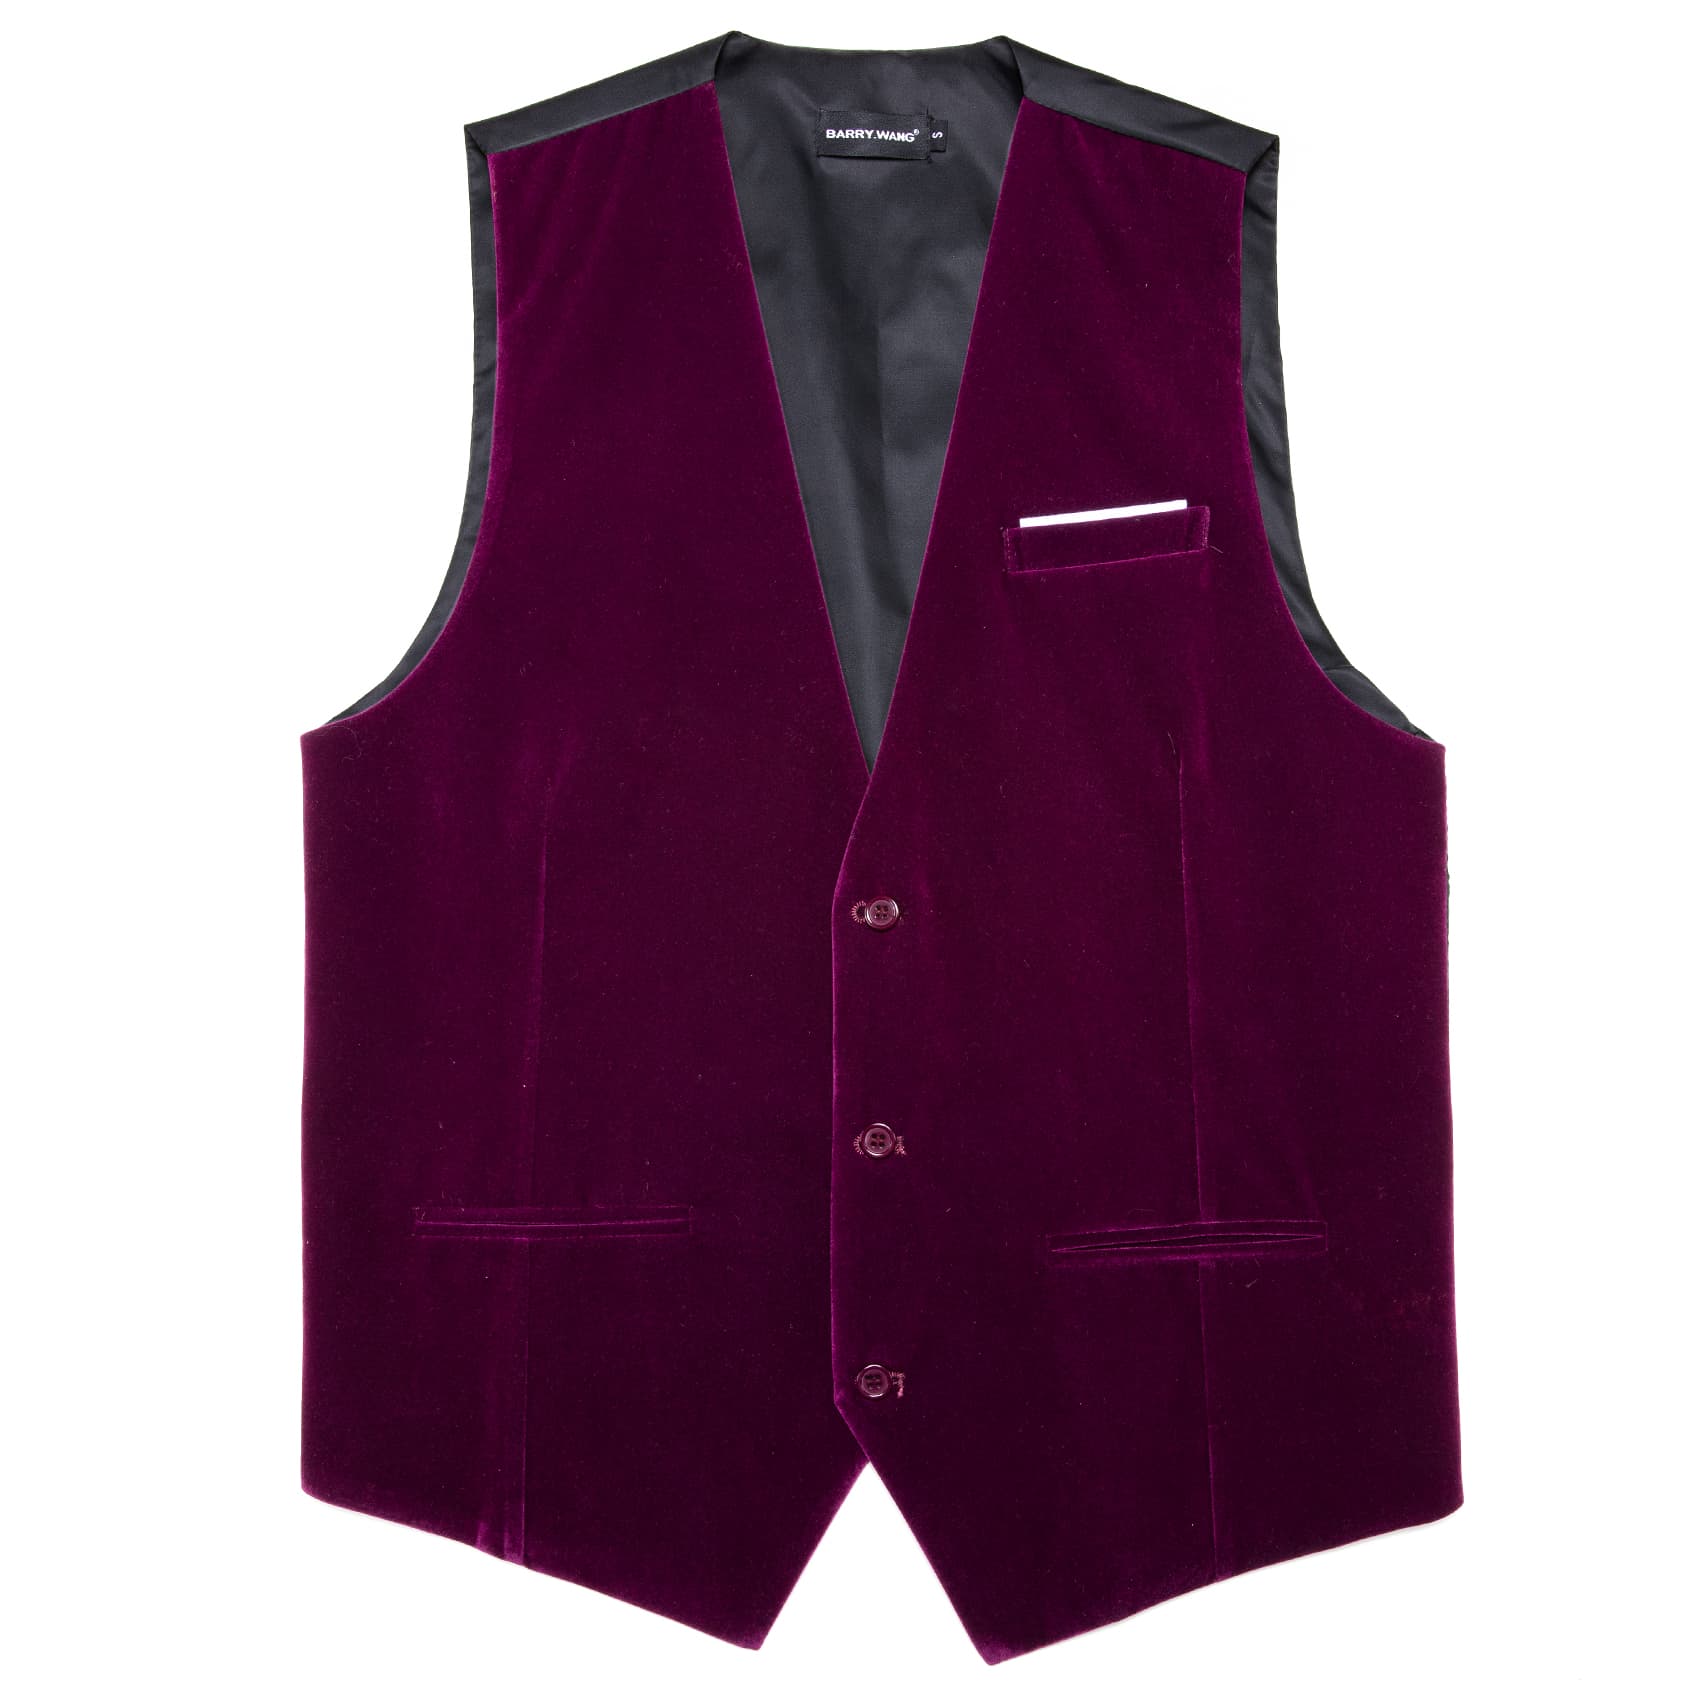 Barry Wang Waistcoat for Men Solid Wine Red Velvet Vest